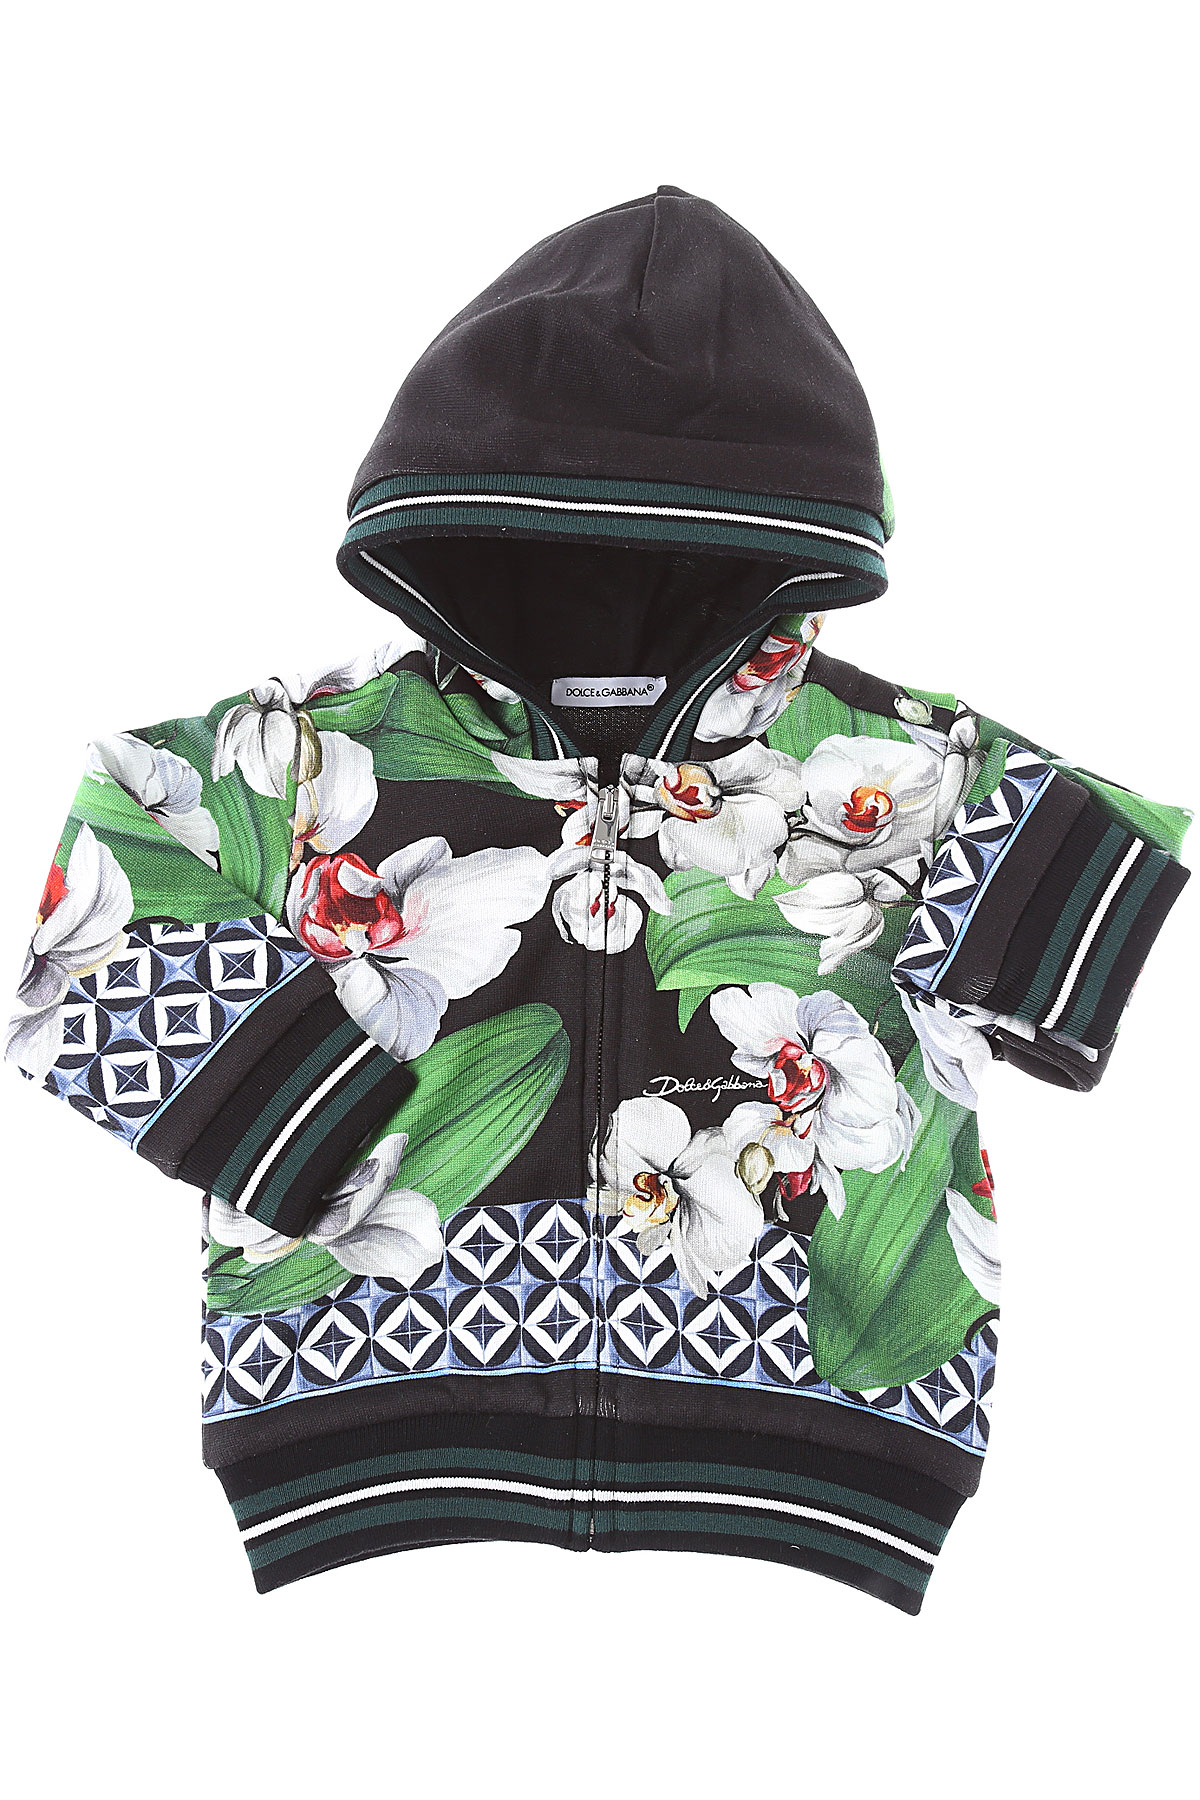 Dolce & Gabbana Baby Sweatshirt & Kapuzenpullover für Mädchen Günstig im Sale, Grün, Baumwolle, 2017, 12M 18M 24M 2Y 9M